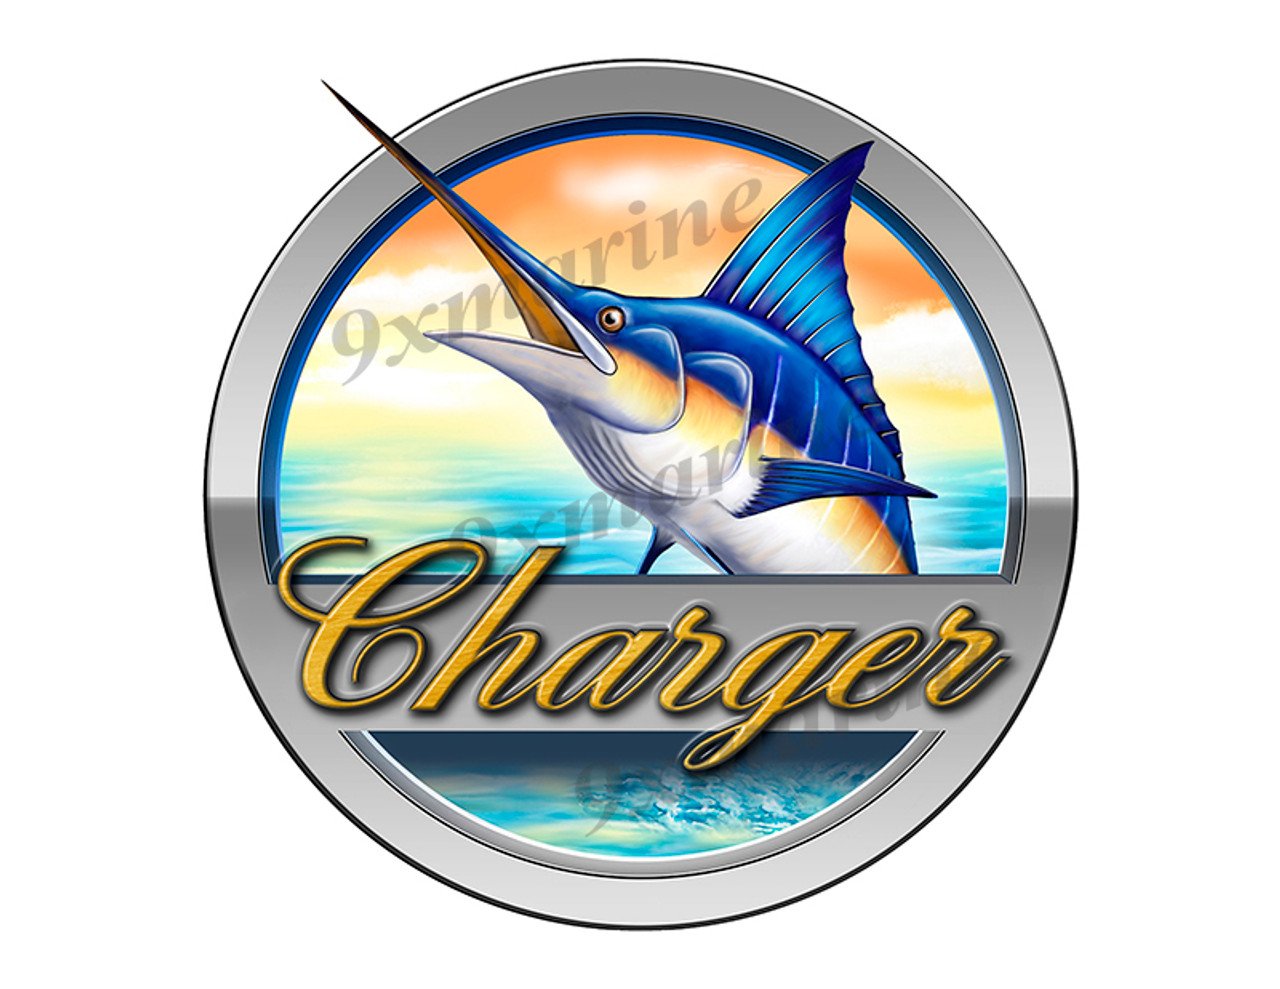 Charger Boat Round Designer Sticker 7.5"x7.5"